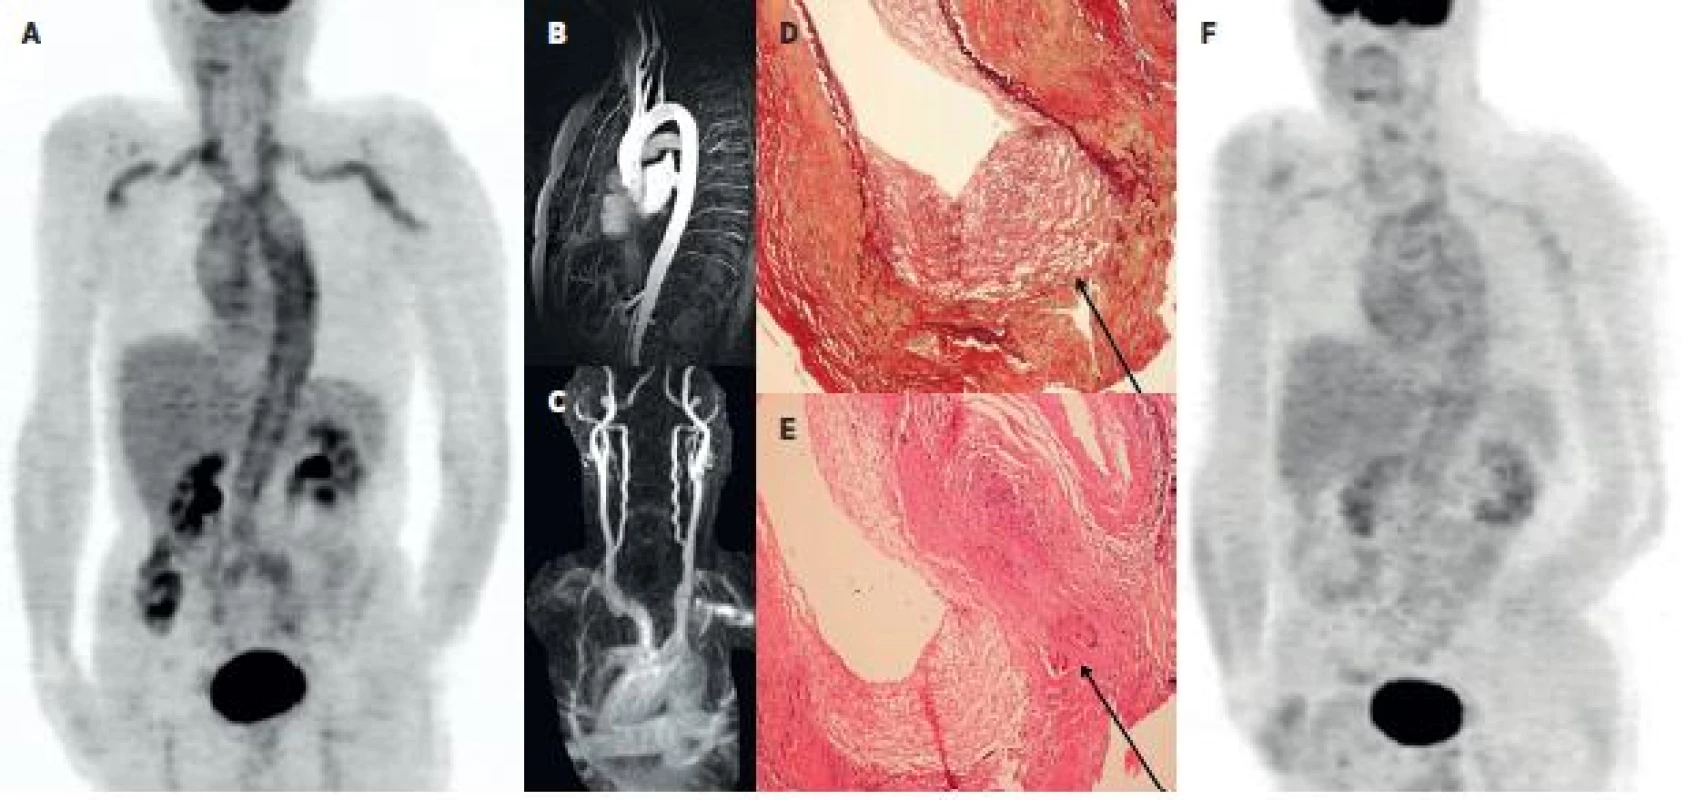 Kazuistika – muž 65 let 2A: PET MIP trupu ve fázi metabolicky aktivní vaskulitidy provázené laboratorními i klinickými známkami zánětlivého onemocnění. Je patrna vysoká akumulace FDG v aortě a v některých velkých tepnách (truncus brachiocephalicus, a. carotis communis bilat., a. subclavia a a. brachialis bilat.). 2B a 2C: Při podezření na vaskulitidu bylo provedeno MRA vyšetření aortálního oblouku a krčních tepen – bez průkazu známek vaskulitidy. Excize temporální tepny ale potvrdila obrovskobuněčnou, temporální arteritis - 2D: barvení na elastická vlákna zv. 100x, průkaz rozpadu lamina elastica interna (označeno). 2E: HE, zv. 100x, průkaz vícejaderných buněk (označeno). 2F: Kontrolní PET vyšetření po 8 měsících terapie glukokortikoidy prokazuje pokles akumulace FDG ve velkých tepnách.